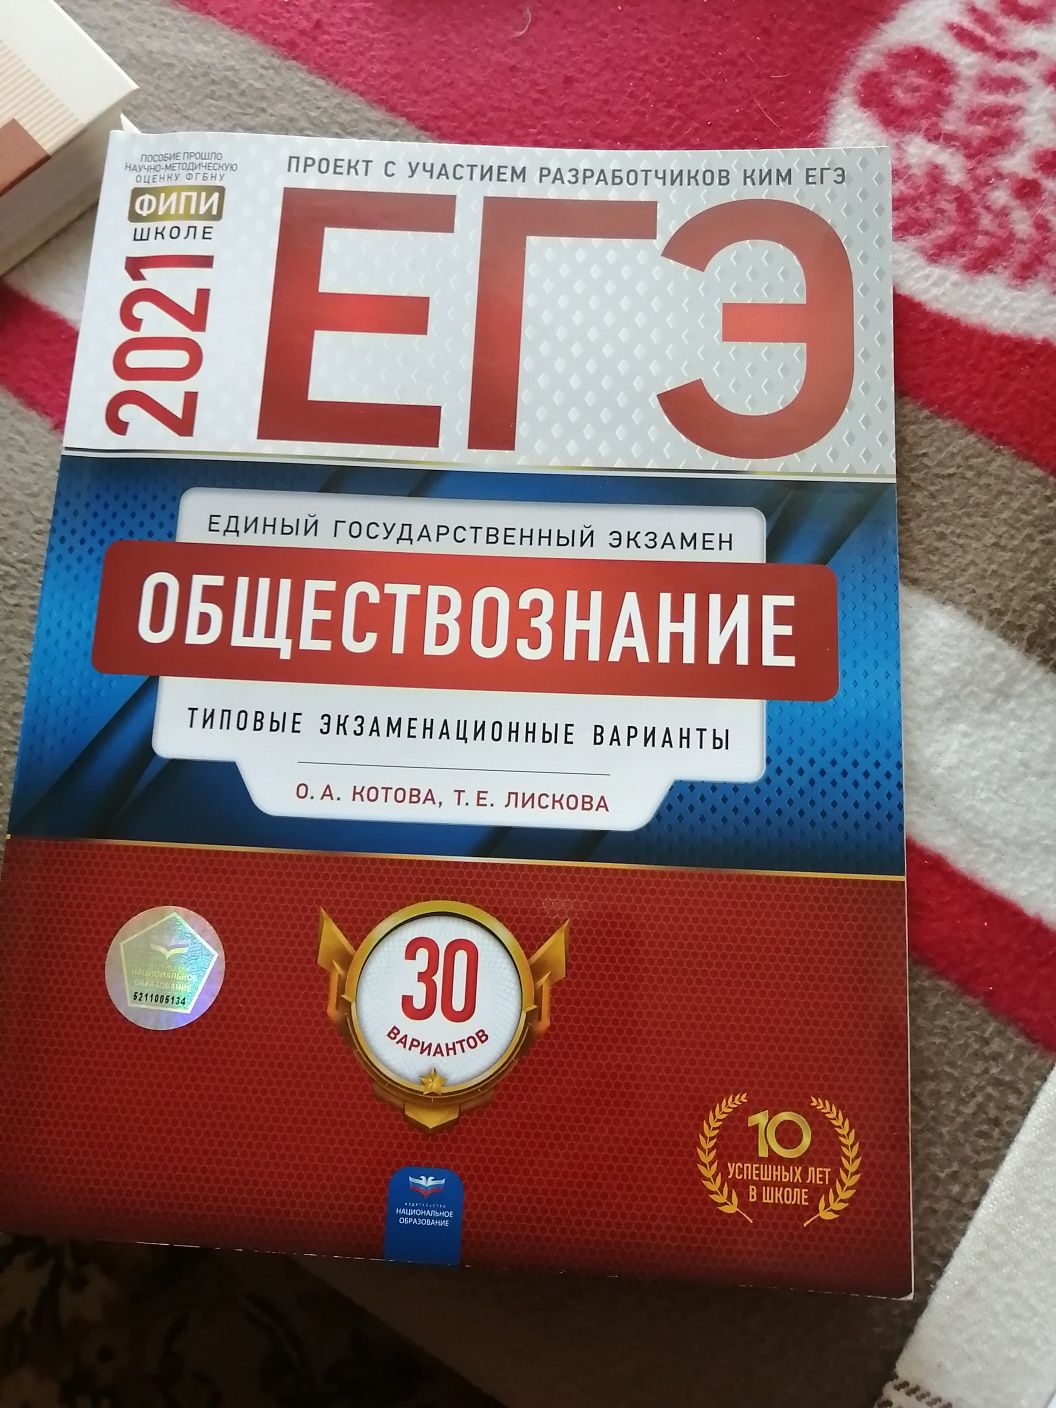 Учебники для подготовки к поступлению в российские ВУЗы